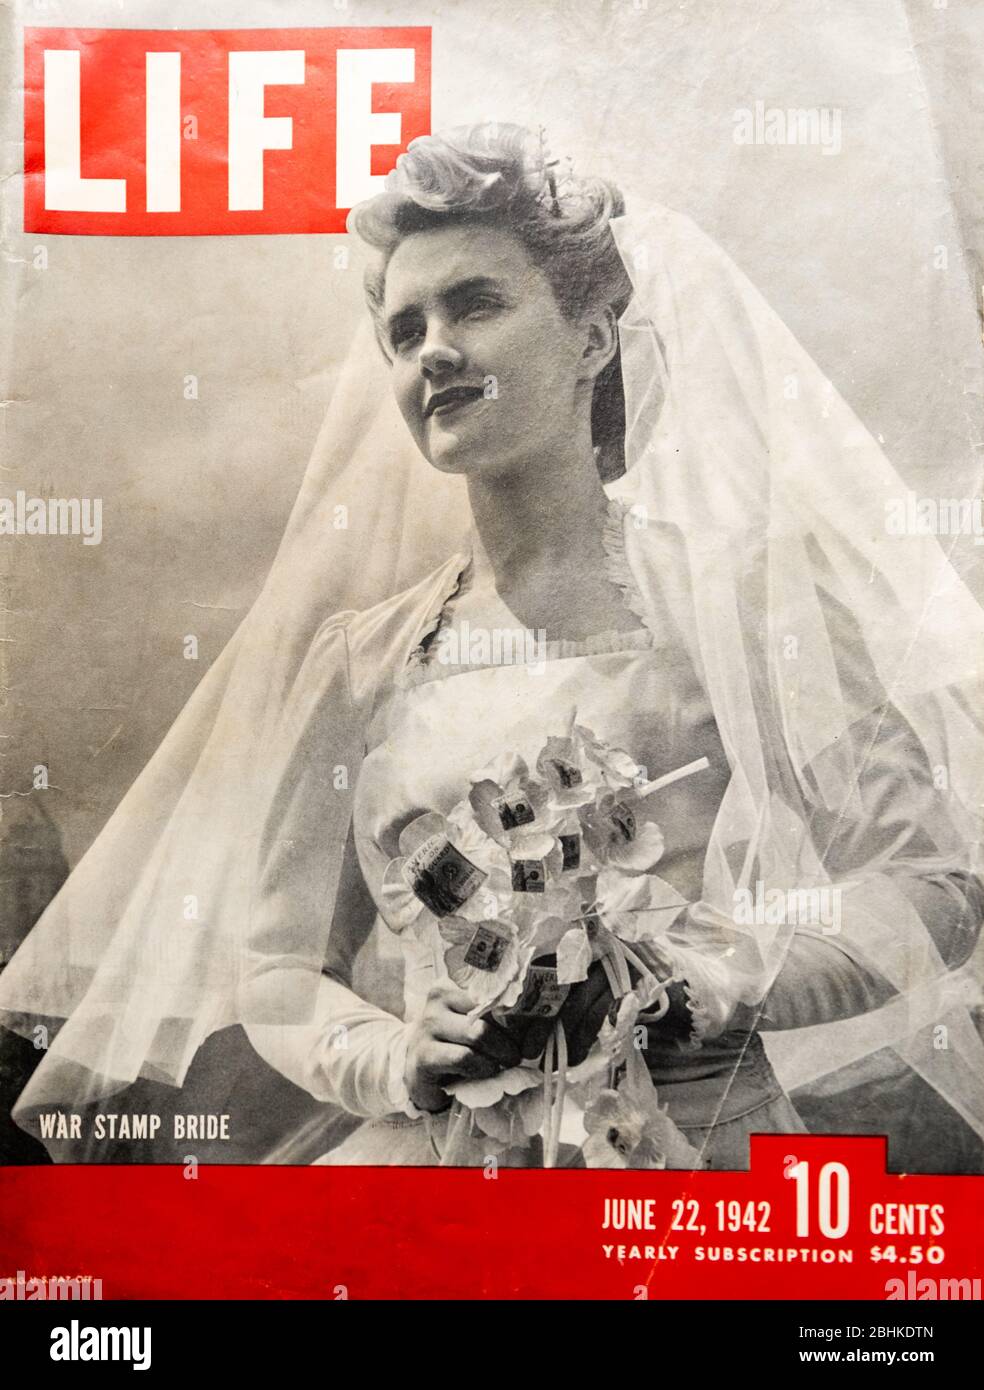 Rivista Life edizione 1942 con copertina a War Stamp Bride. Foto Stock